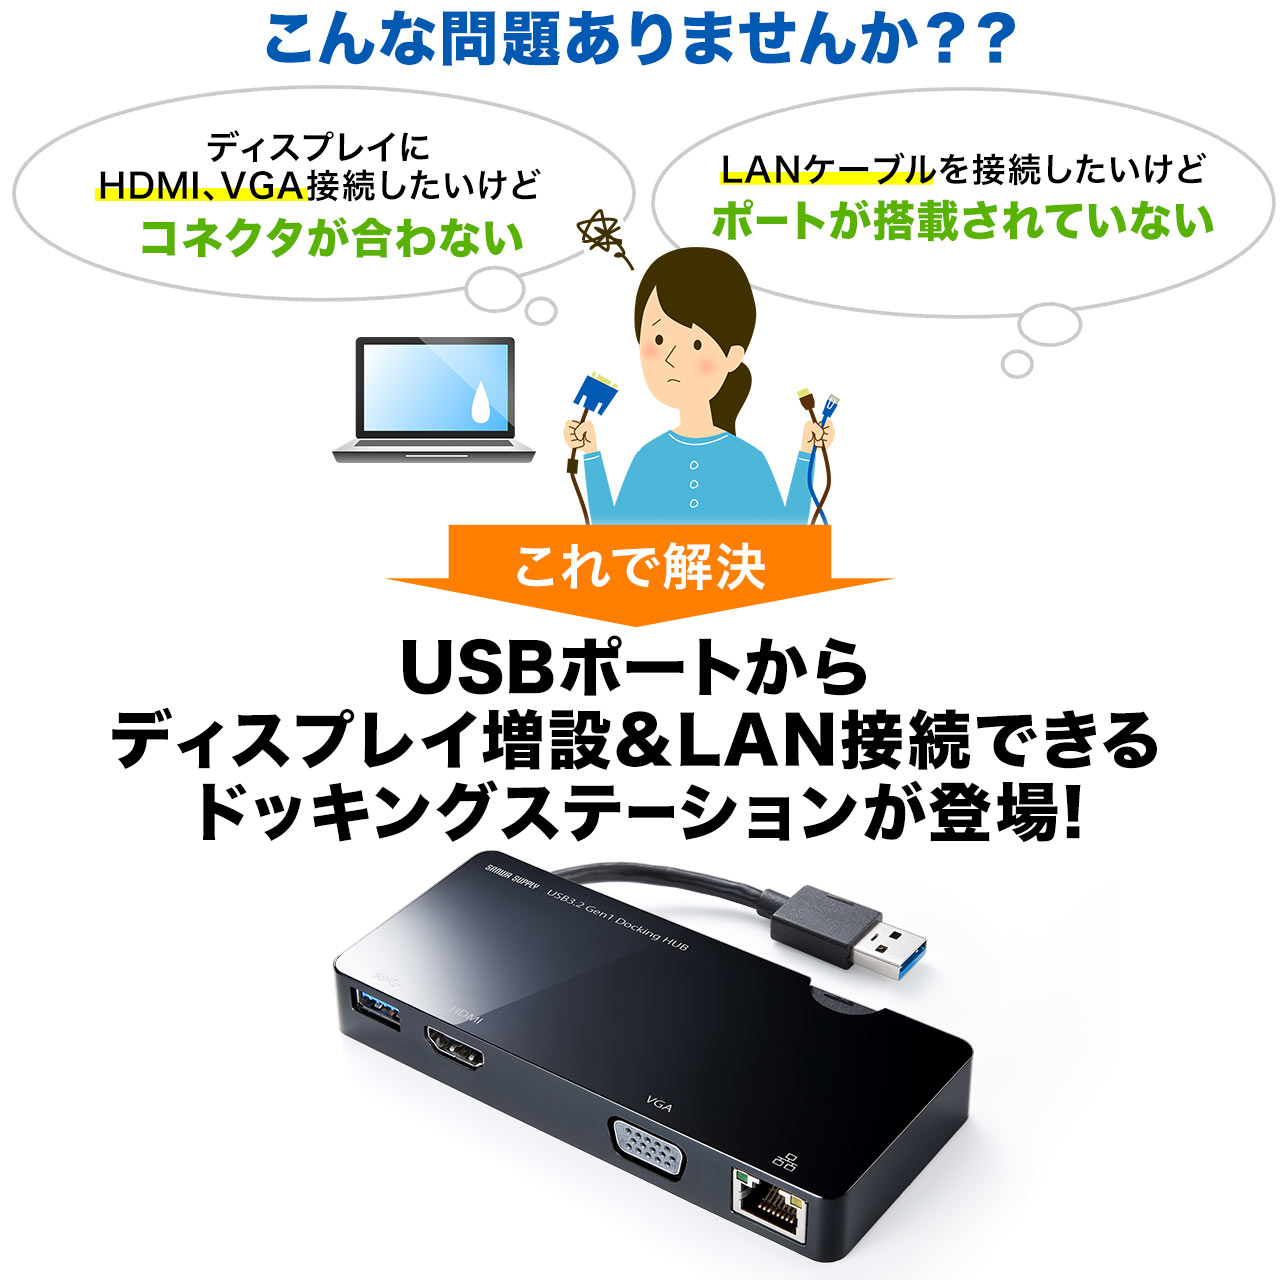 USB3.0 hbLOXe[V oC^Cv QWXGA(2048~1152)Ή 4in1 HDMI VGA LAN USB3.0 e[N [g ݑΖ 400-HUB031